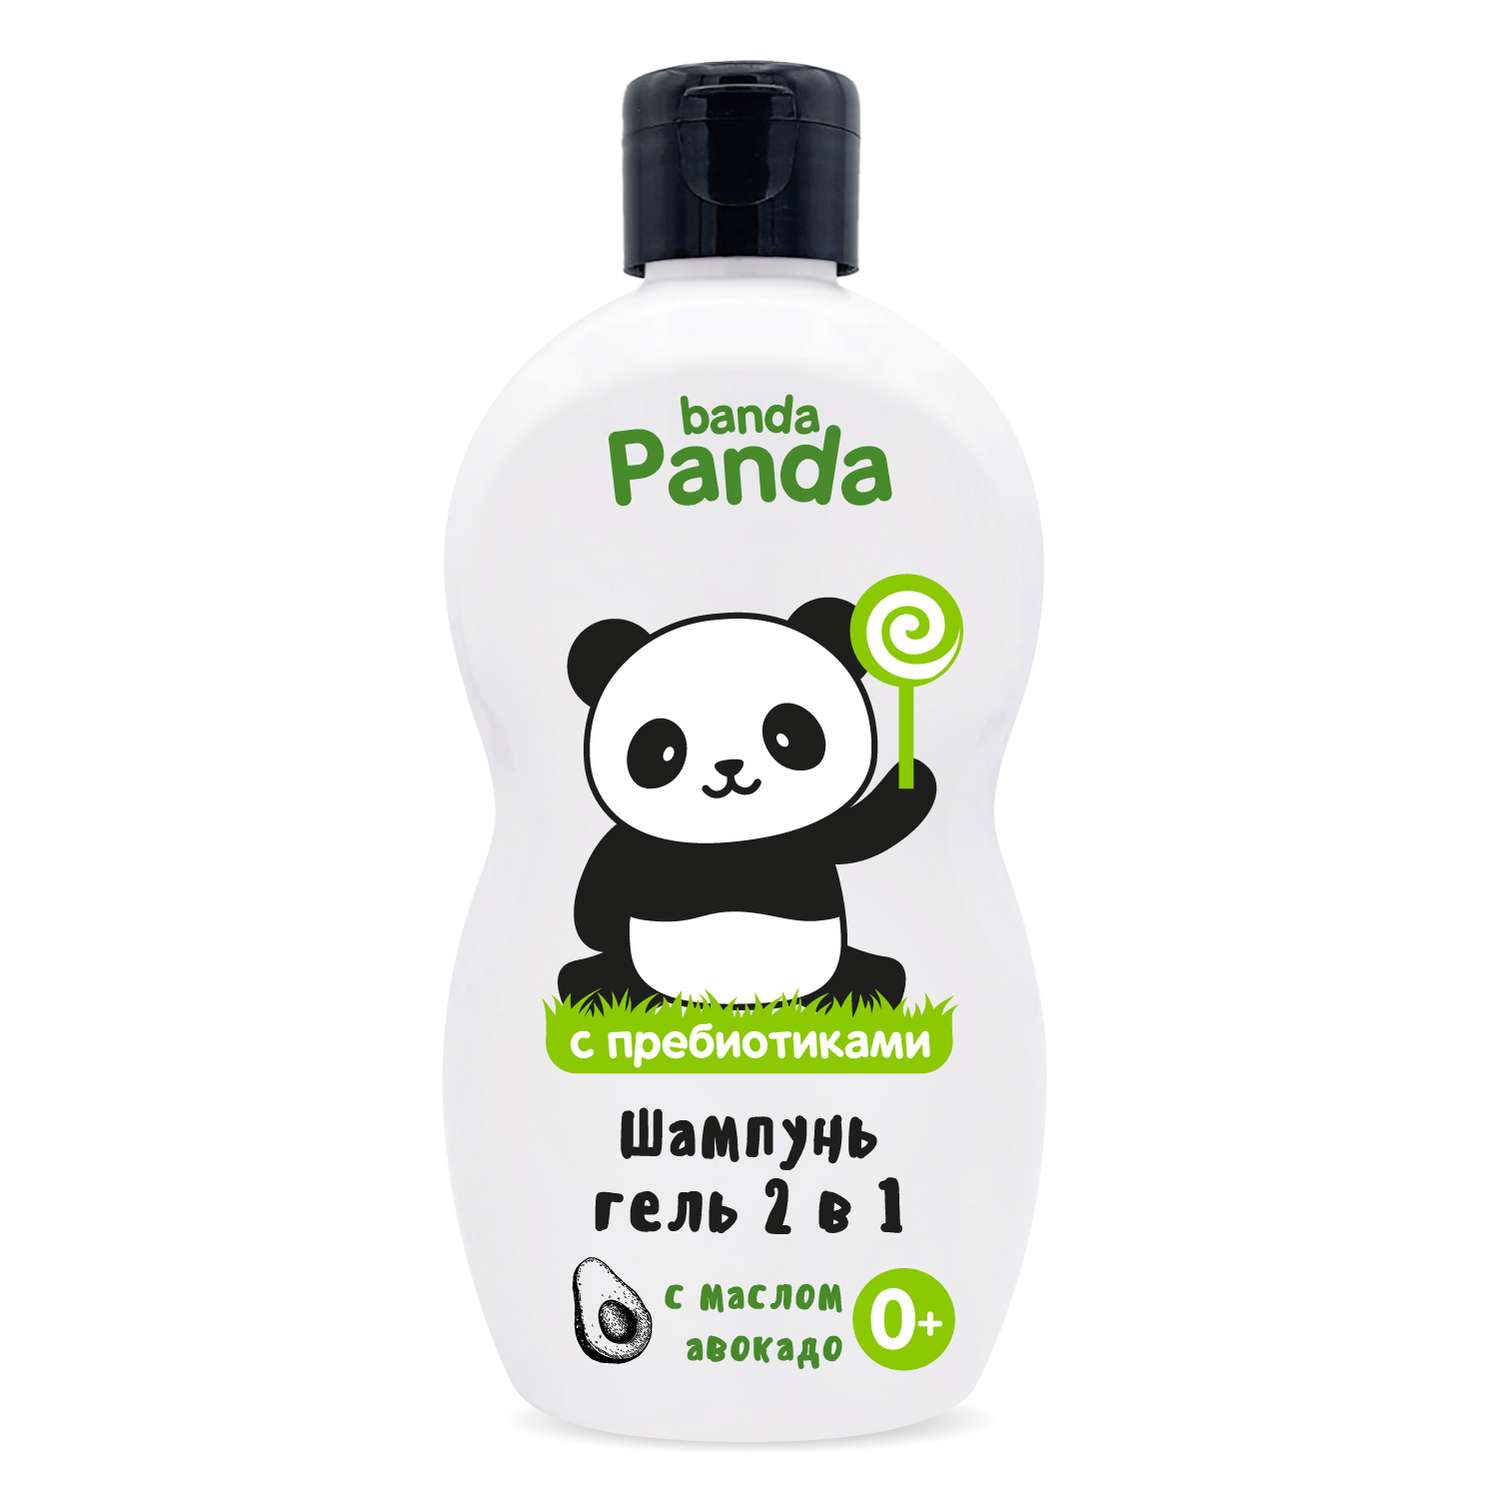 Шампунь-гель с Пребиотиком banda Panda 400мл для купания 2в1 с маслом авокадо 0+ - фото 2